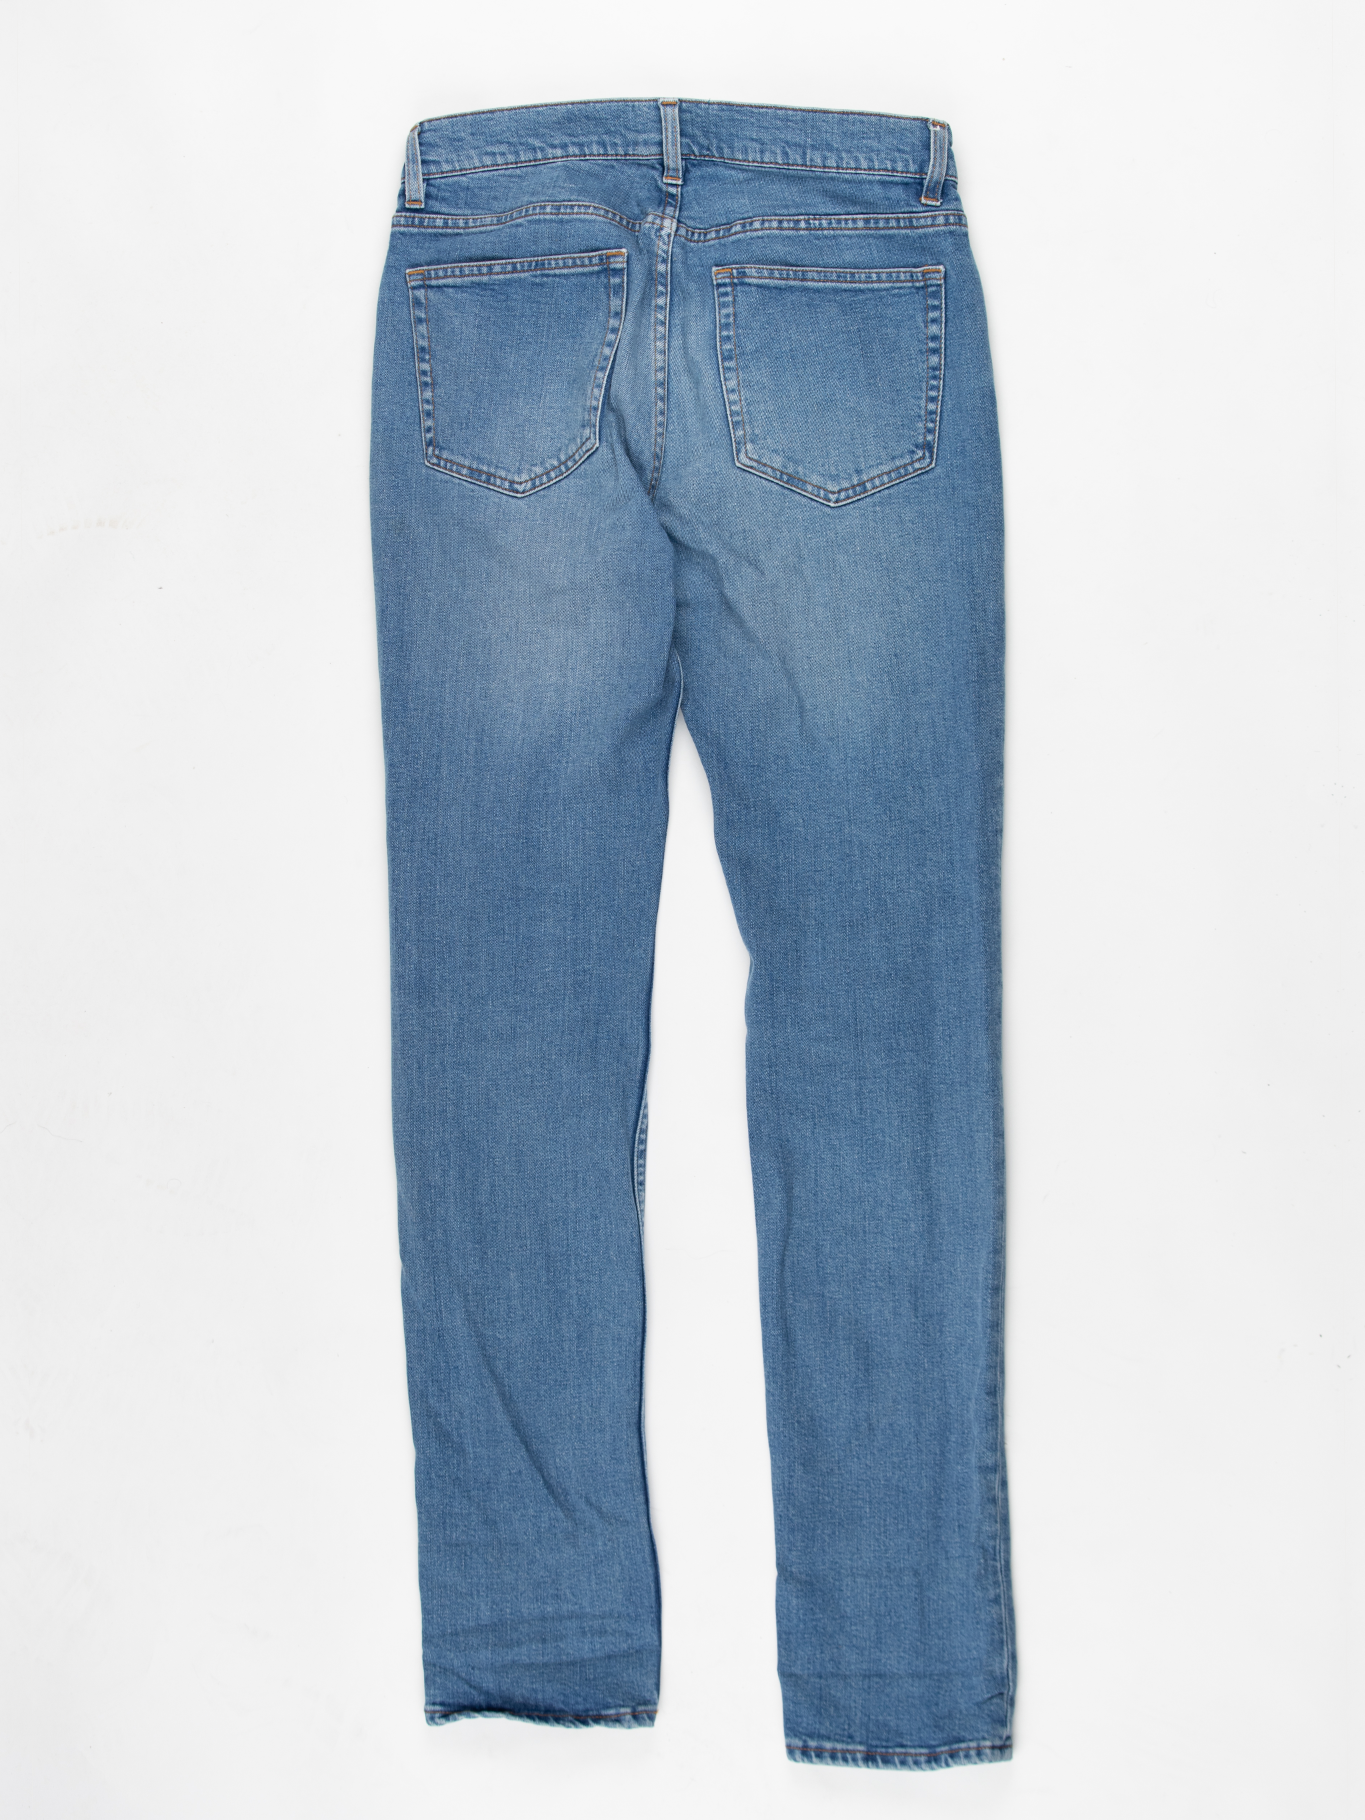 'Ace Carter' Denim Jeans